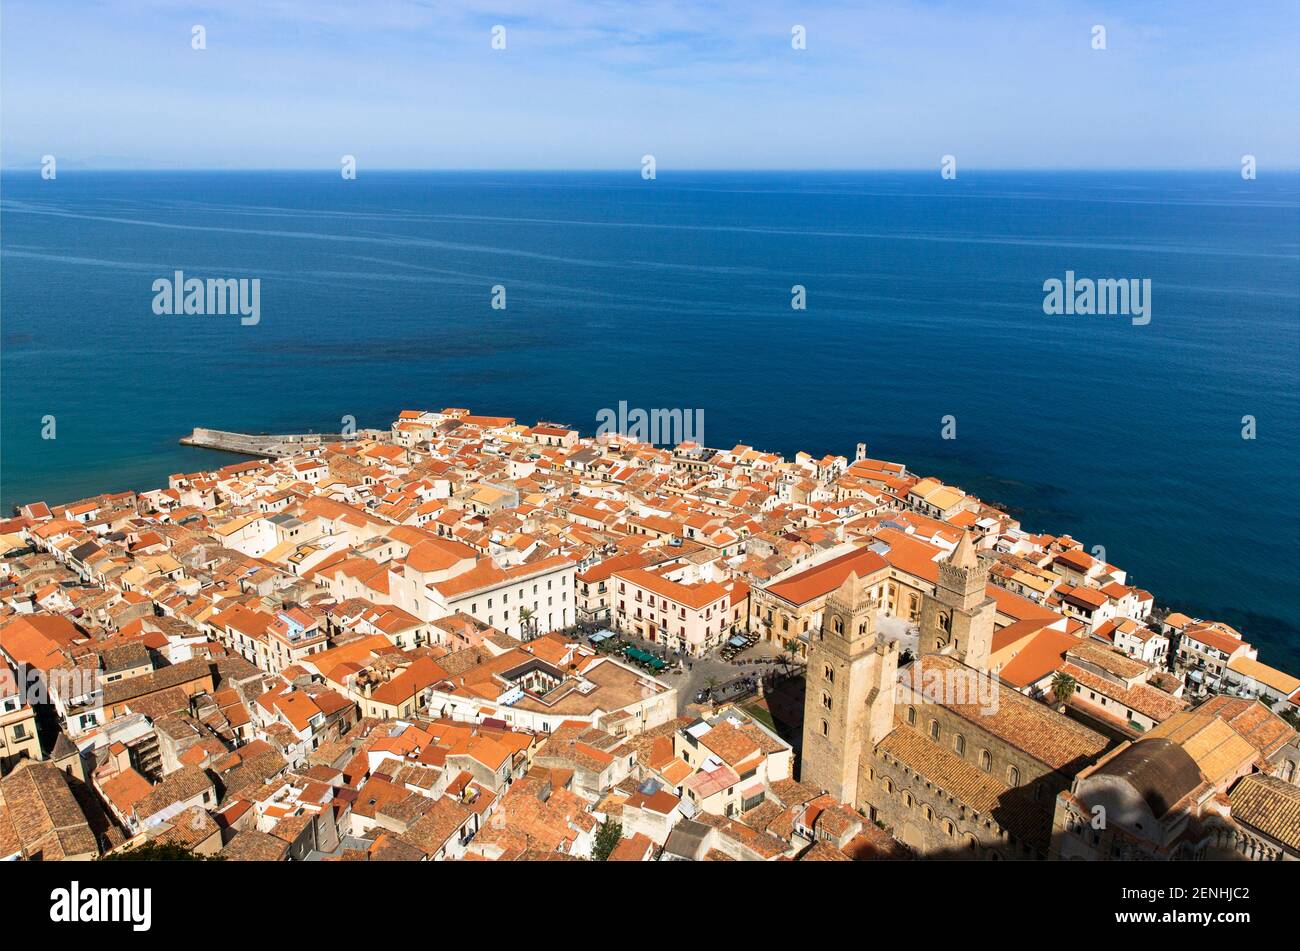 Italia,Sicilia,Cefalù, una vista aerea della città da Rocca che mostra il labirinto di strade e tetti di tegole rosse. Foto Stock